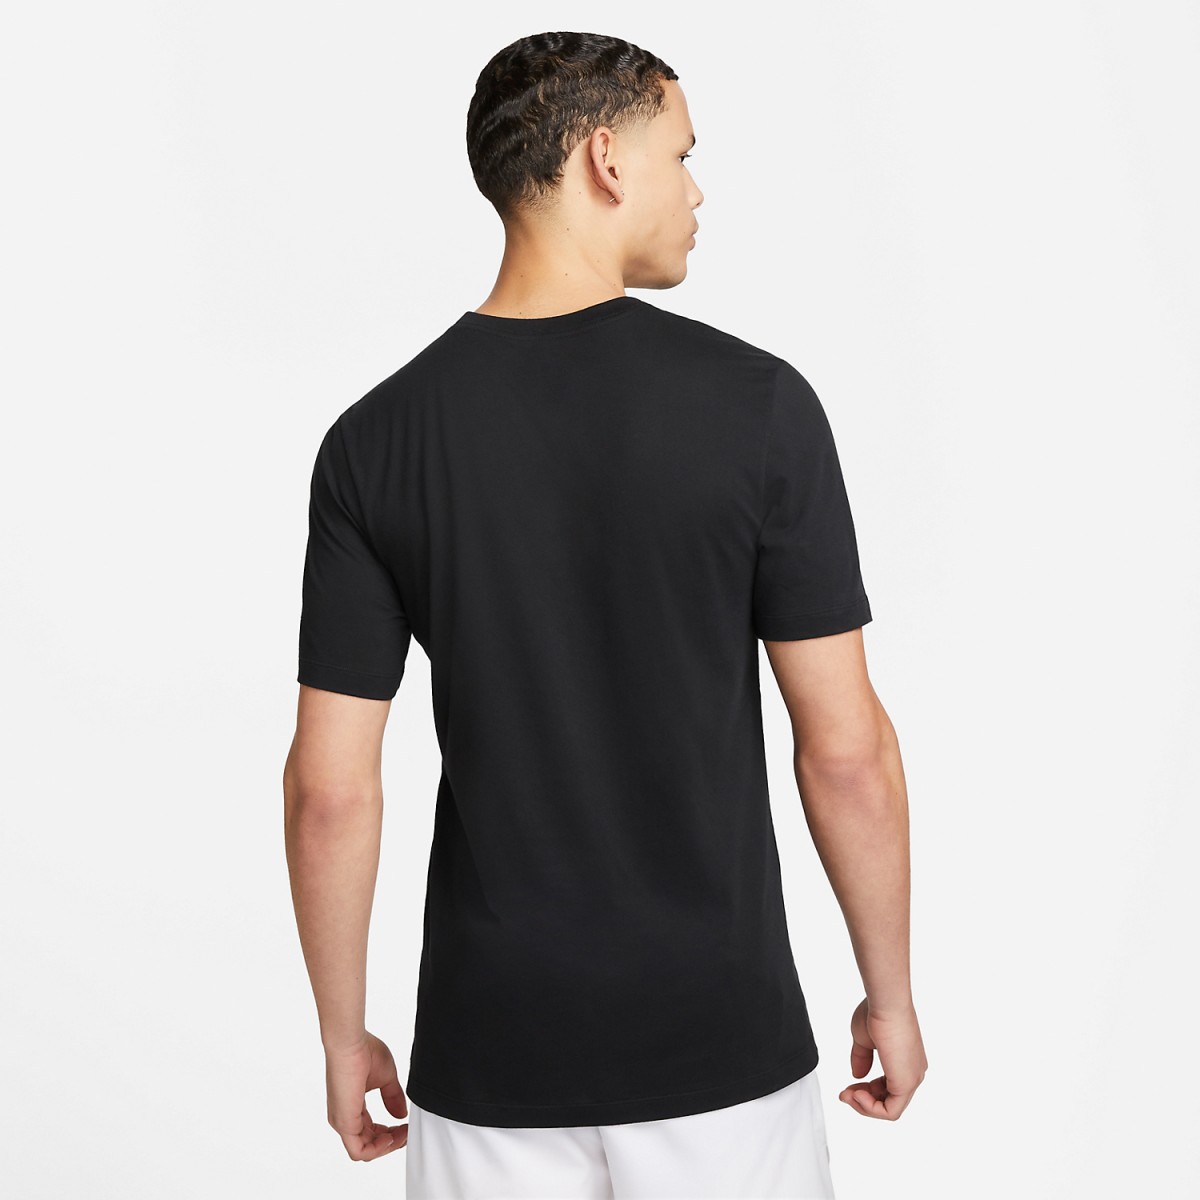 Теннисная футболка мужская Nike Rafa T-Shirt black